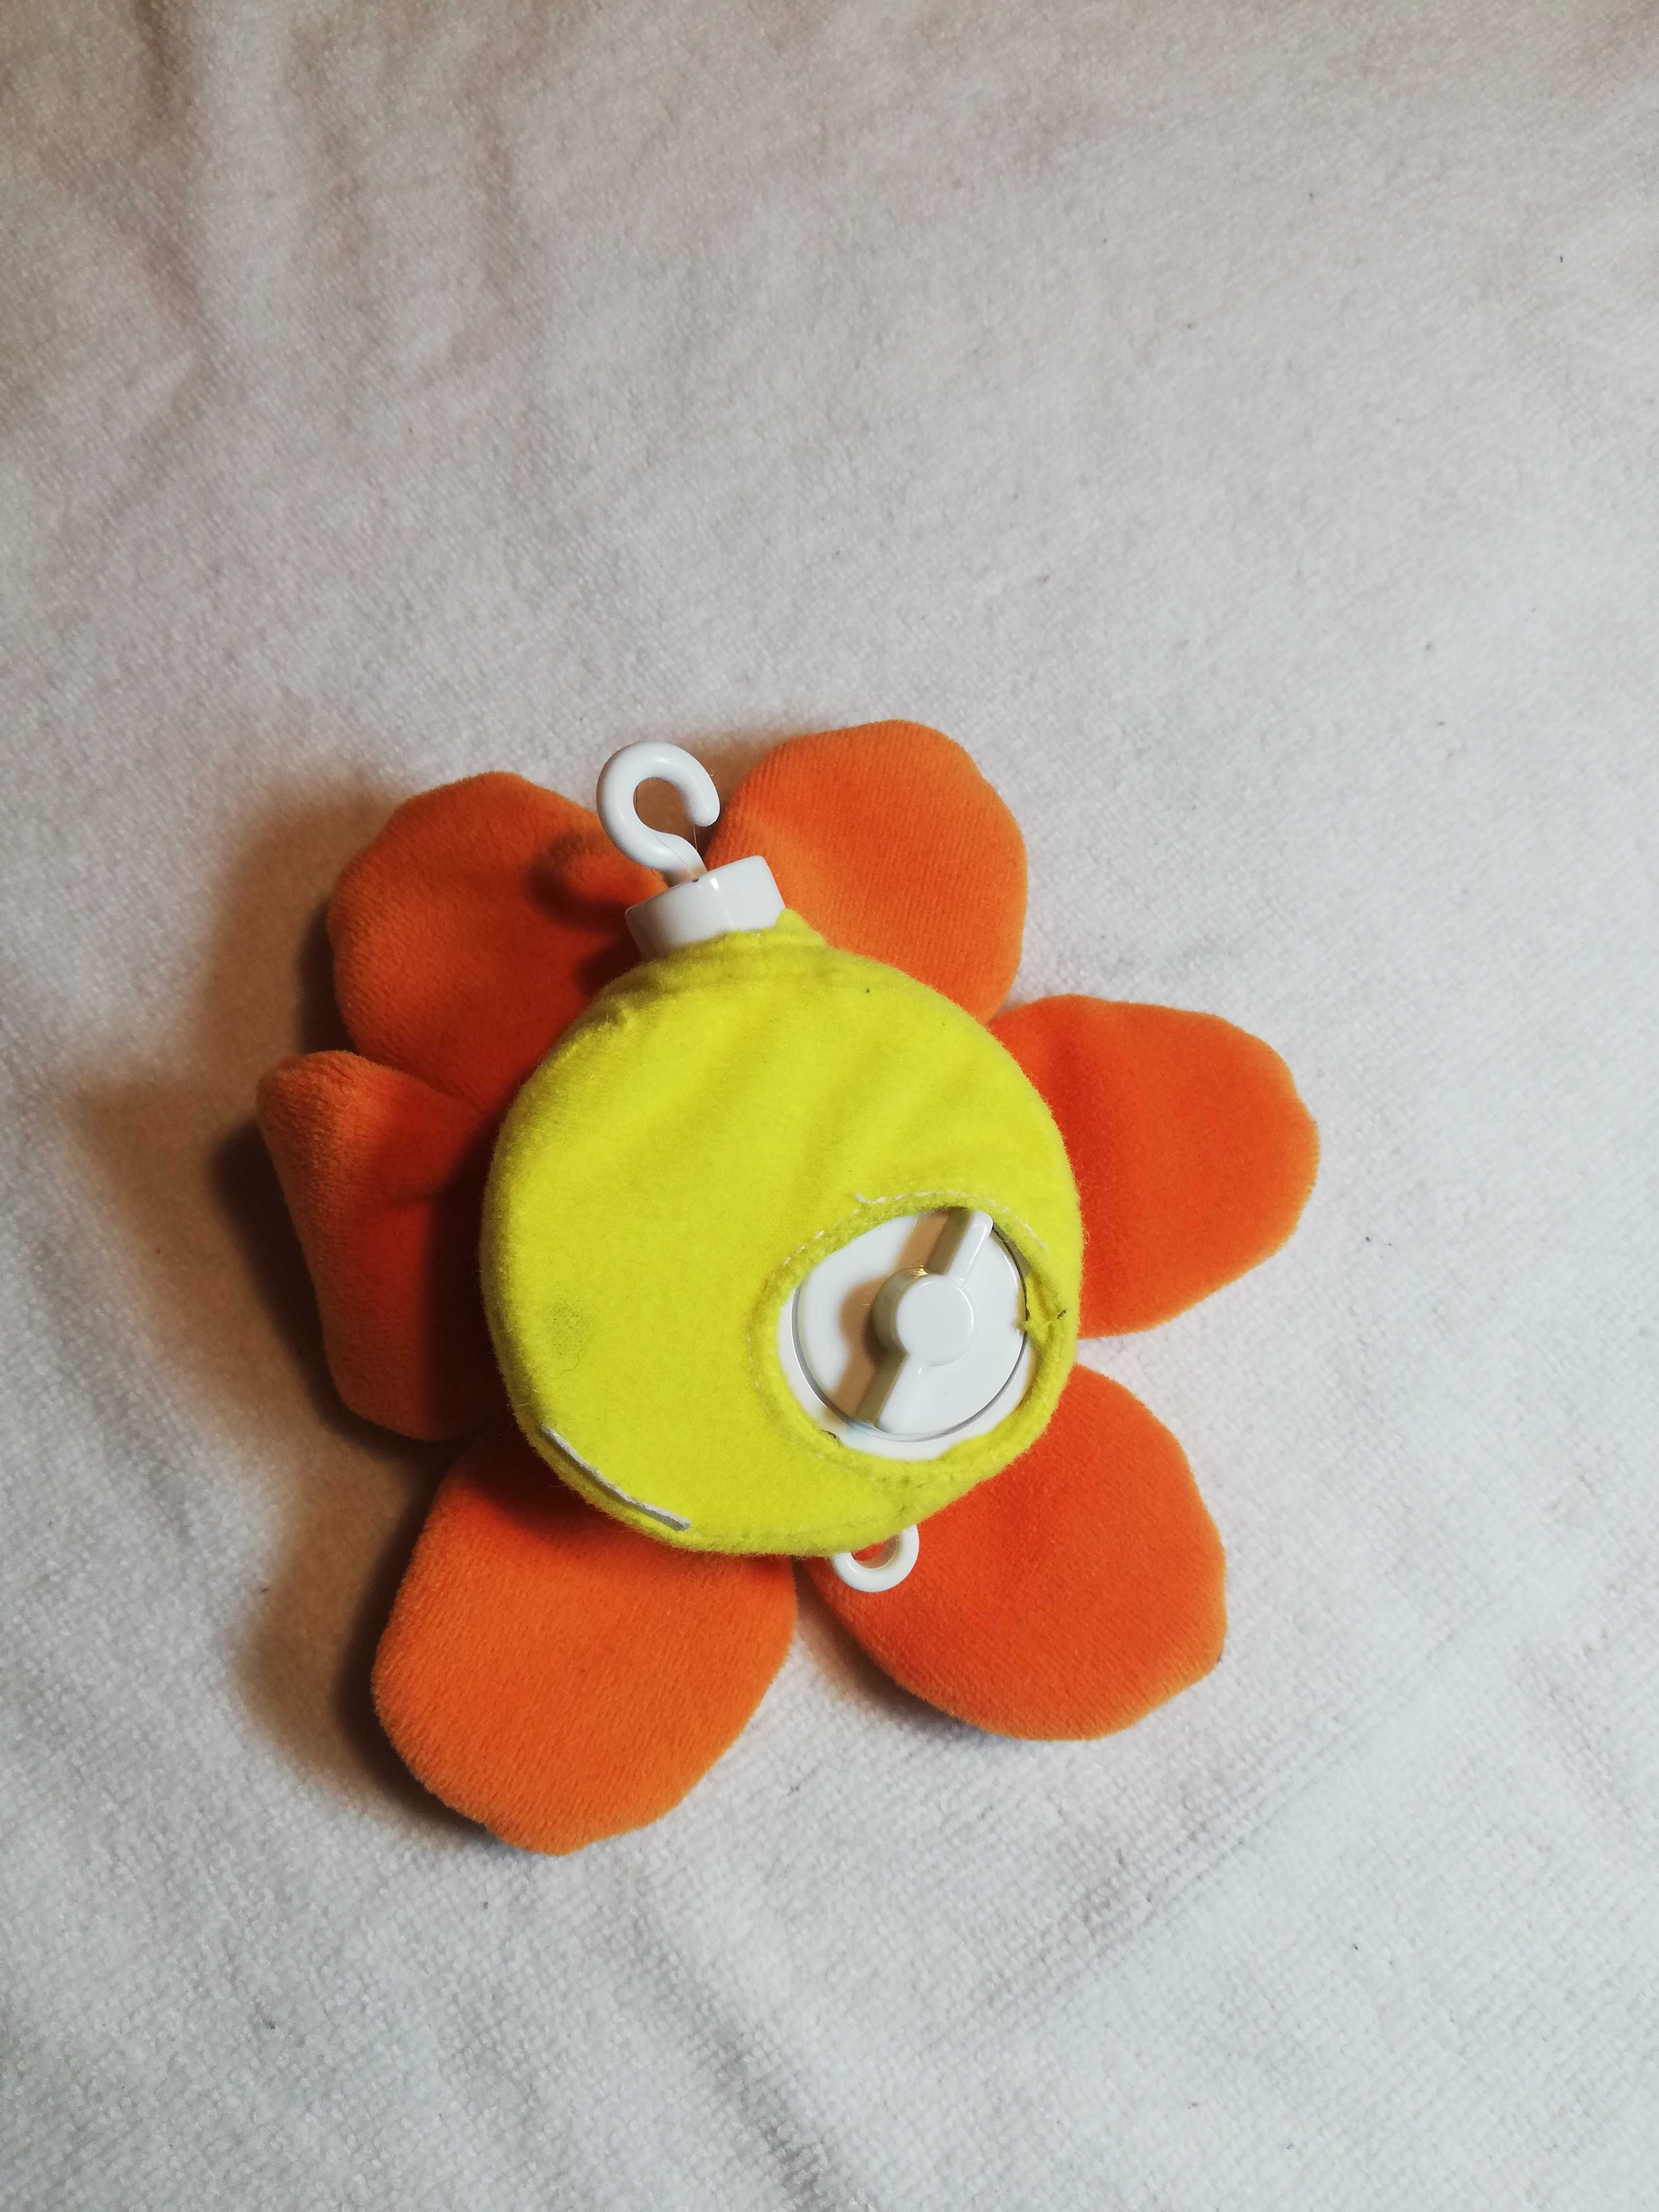 Zestaw zabawek dla niemowlaka: spirala, kocyk do zabawy itp